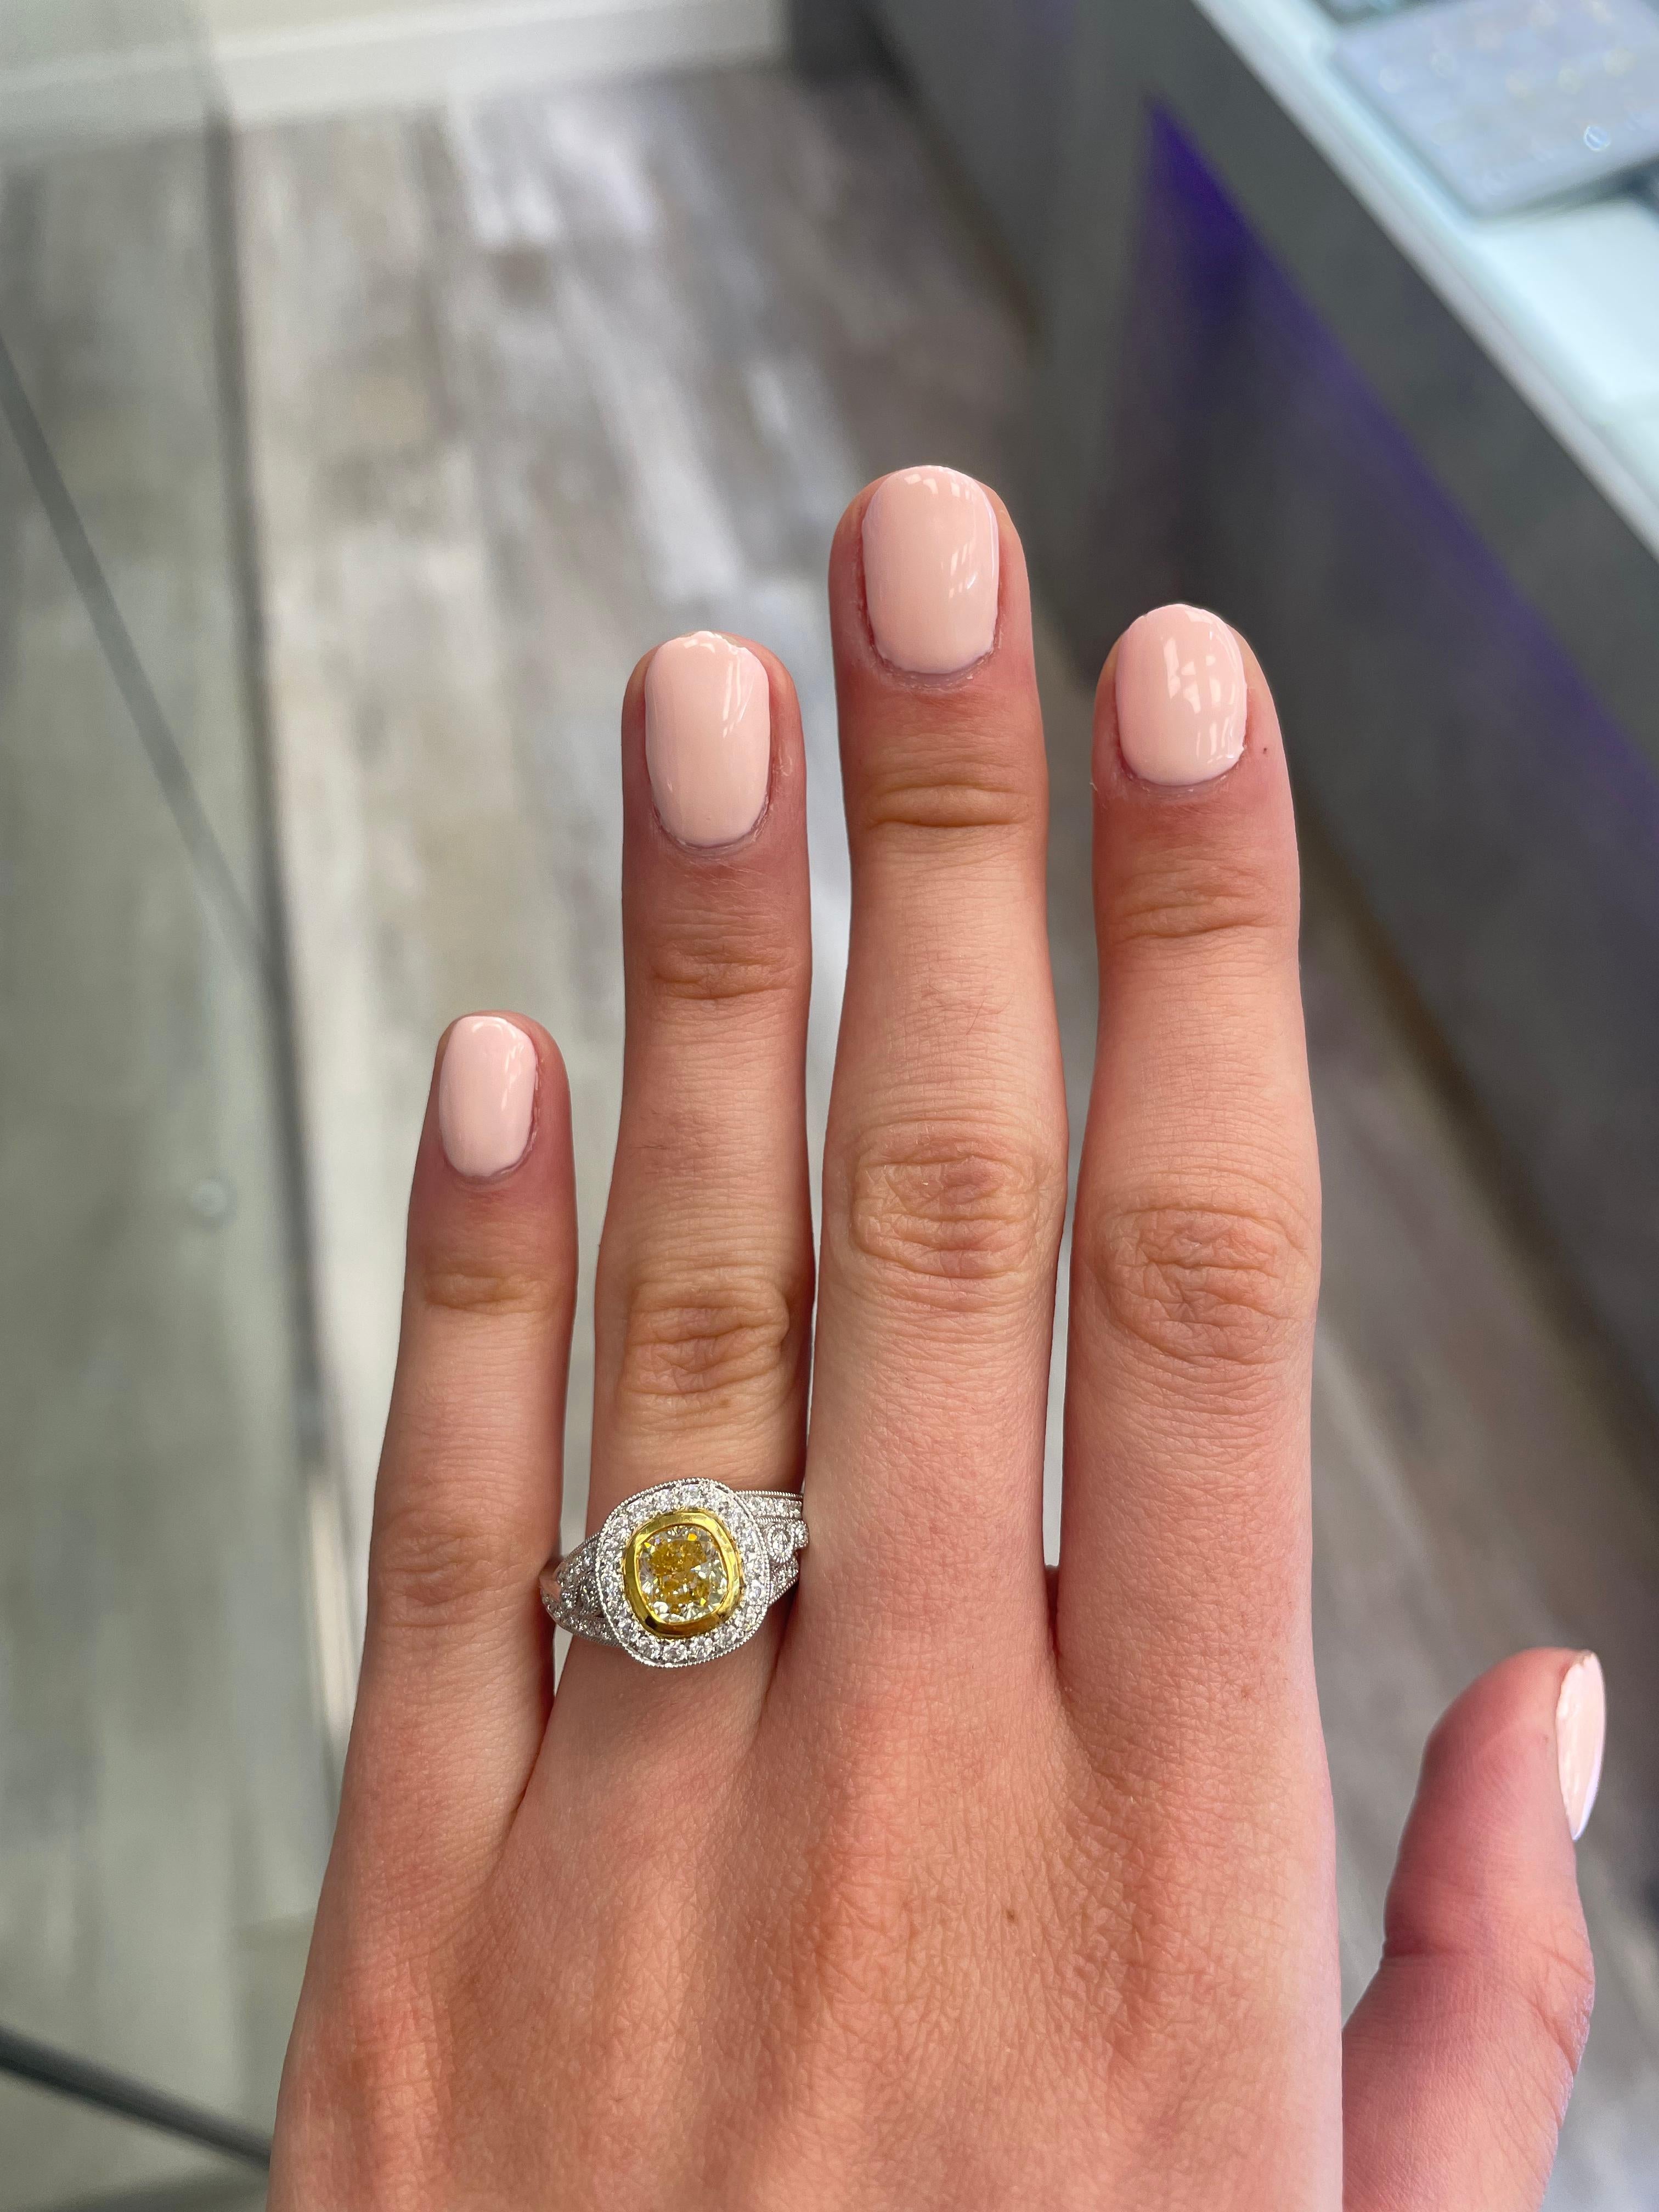 Atemberaubender moderner EGL-zertifizierter gelber Diamant mit Halo-Ring, zweifarbiges 18k Gelb- und Weißgold. Von Alexander Beverly Hills
2,36 Karat Gesamtgewicht der Diamanten.
1,31 Karat Diamant im Kissenschliff mit intensiver gelber Farbe und